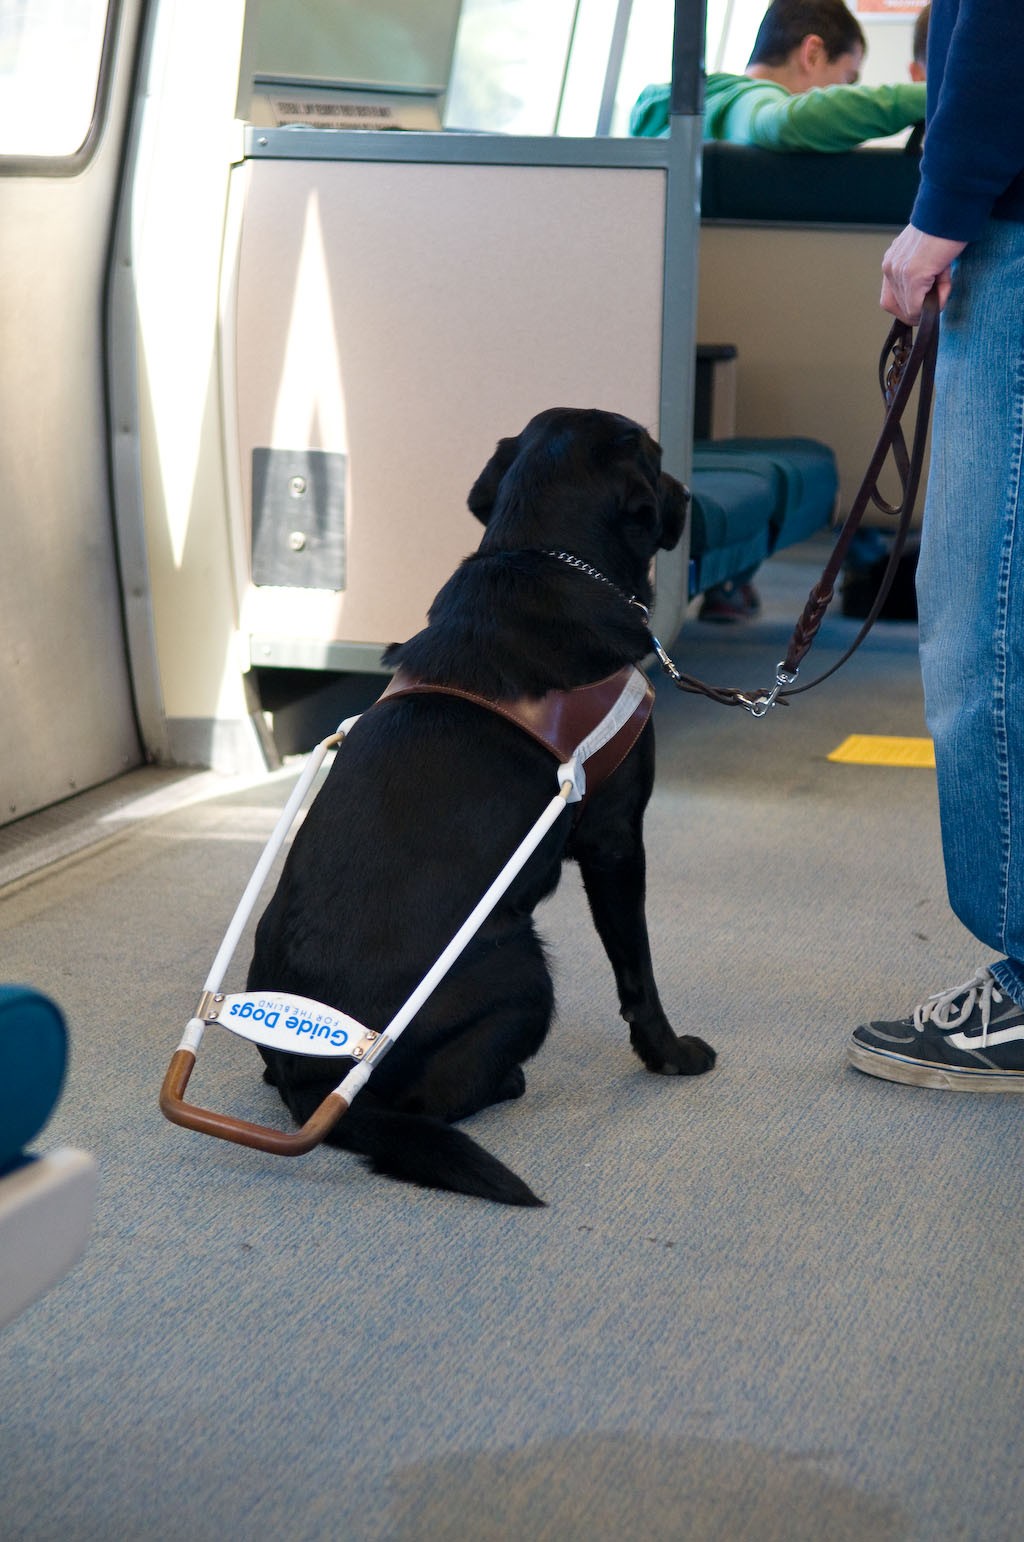 De nombreux chiens-guides décorent des parcours utiles, comme de la maison de la personne assistée au métro par exemple (Photo : Flickr/ Kevin Sharp/ CreativeCommons)